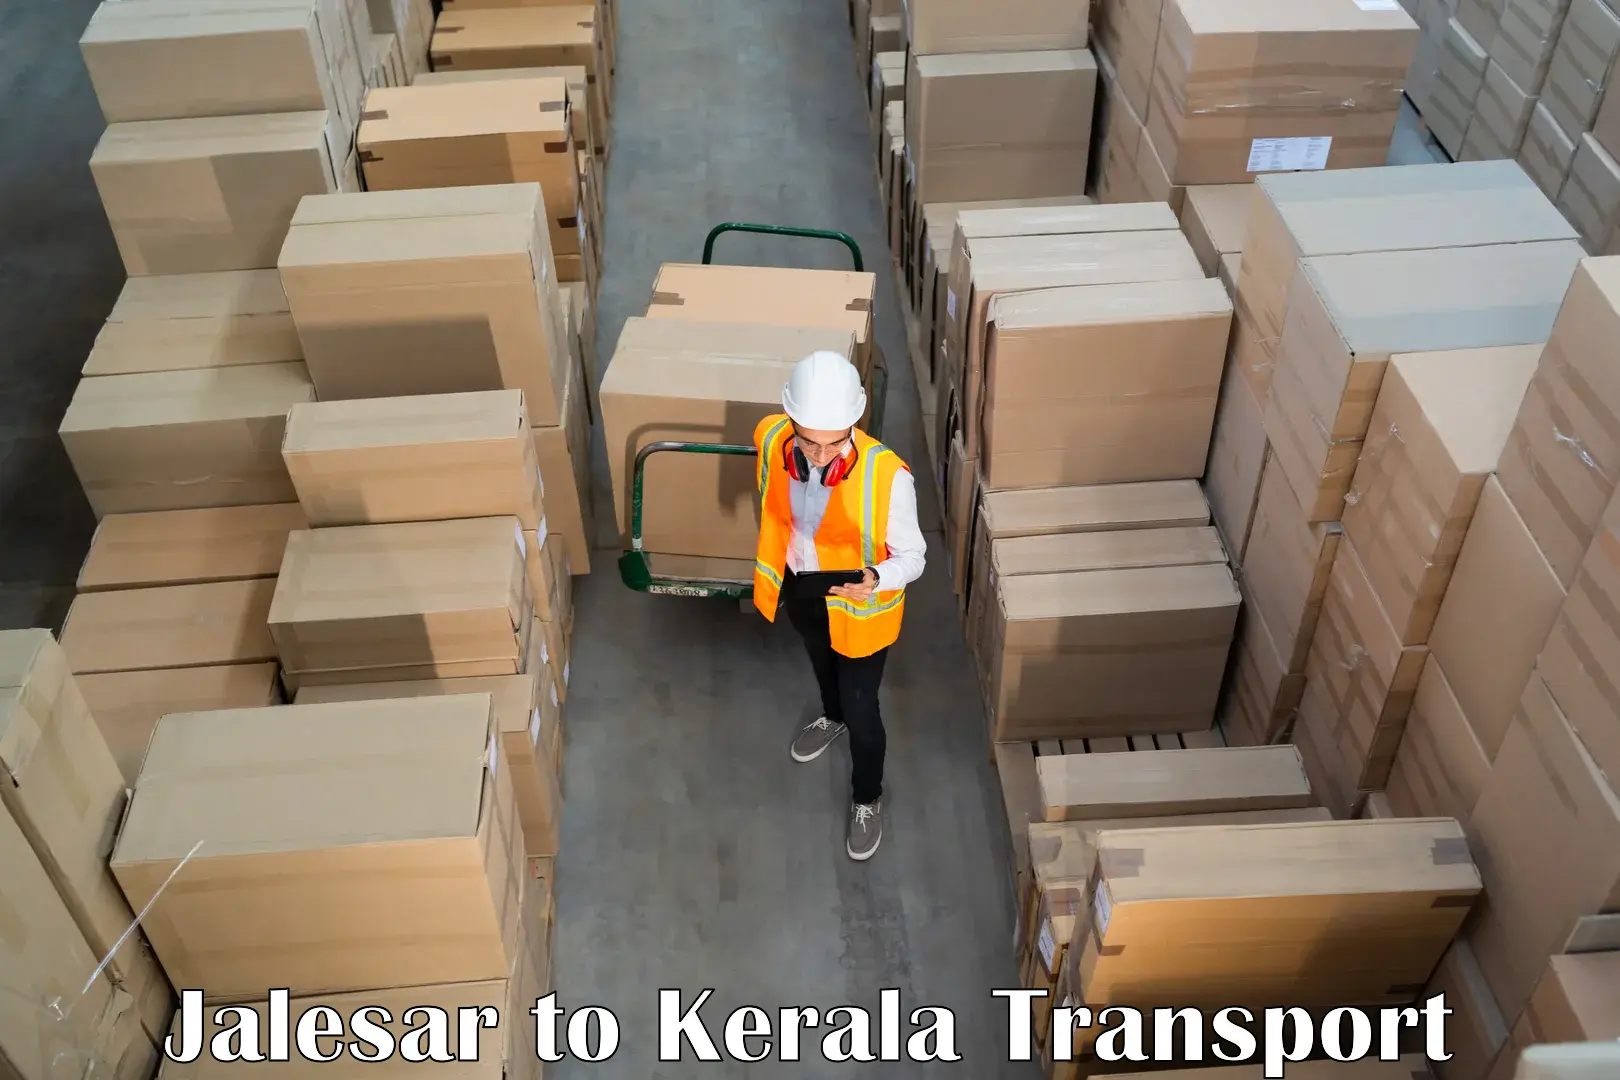 Commercial transport service Jalesar to Nileshwar